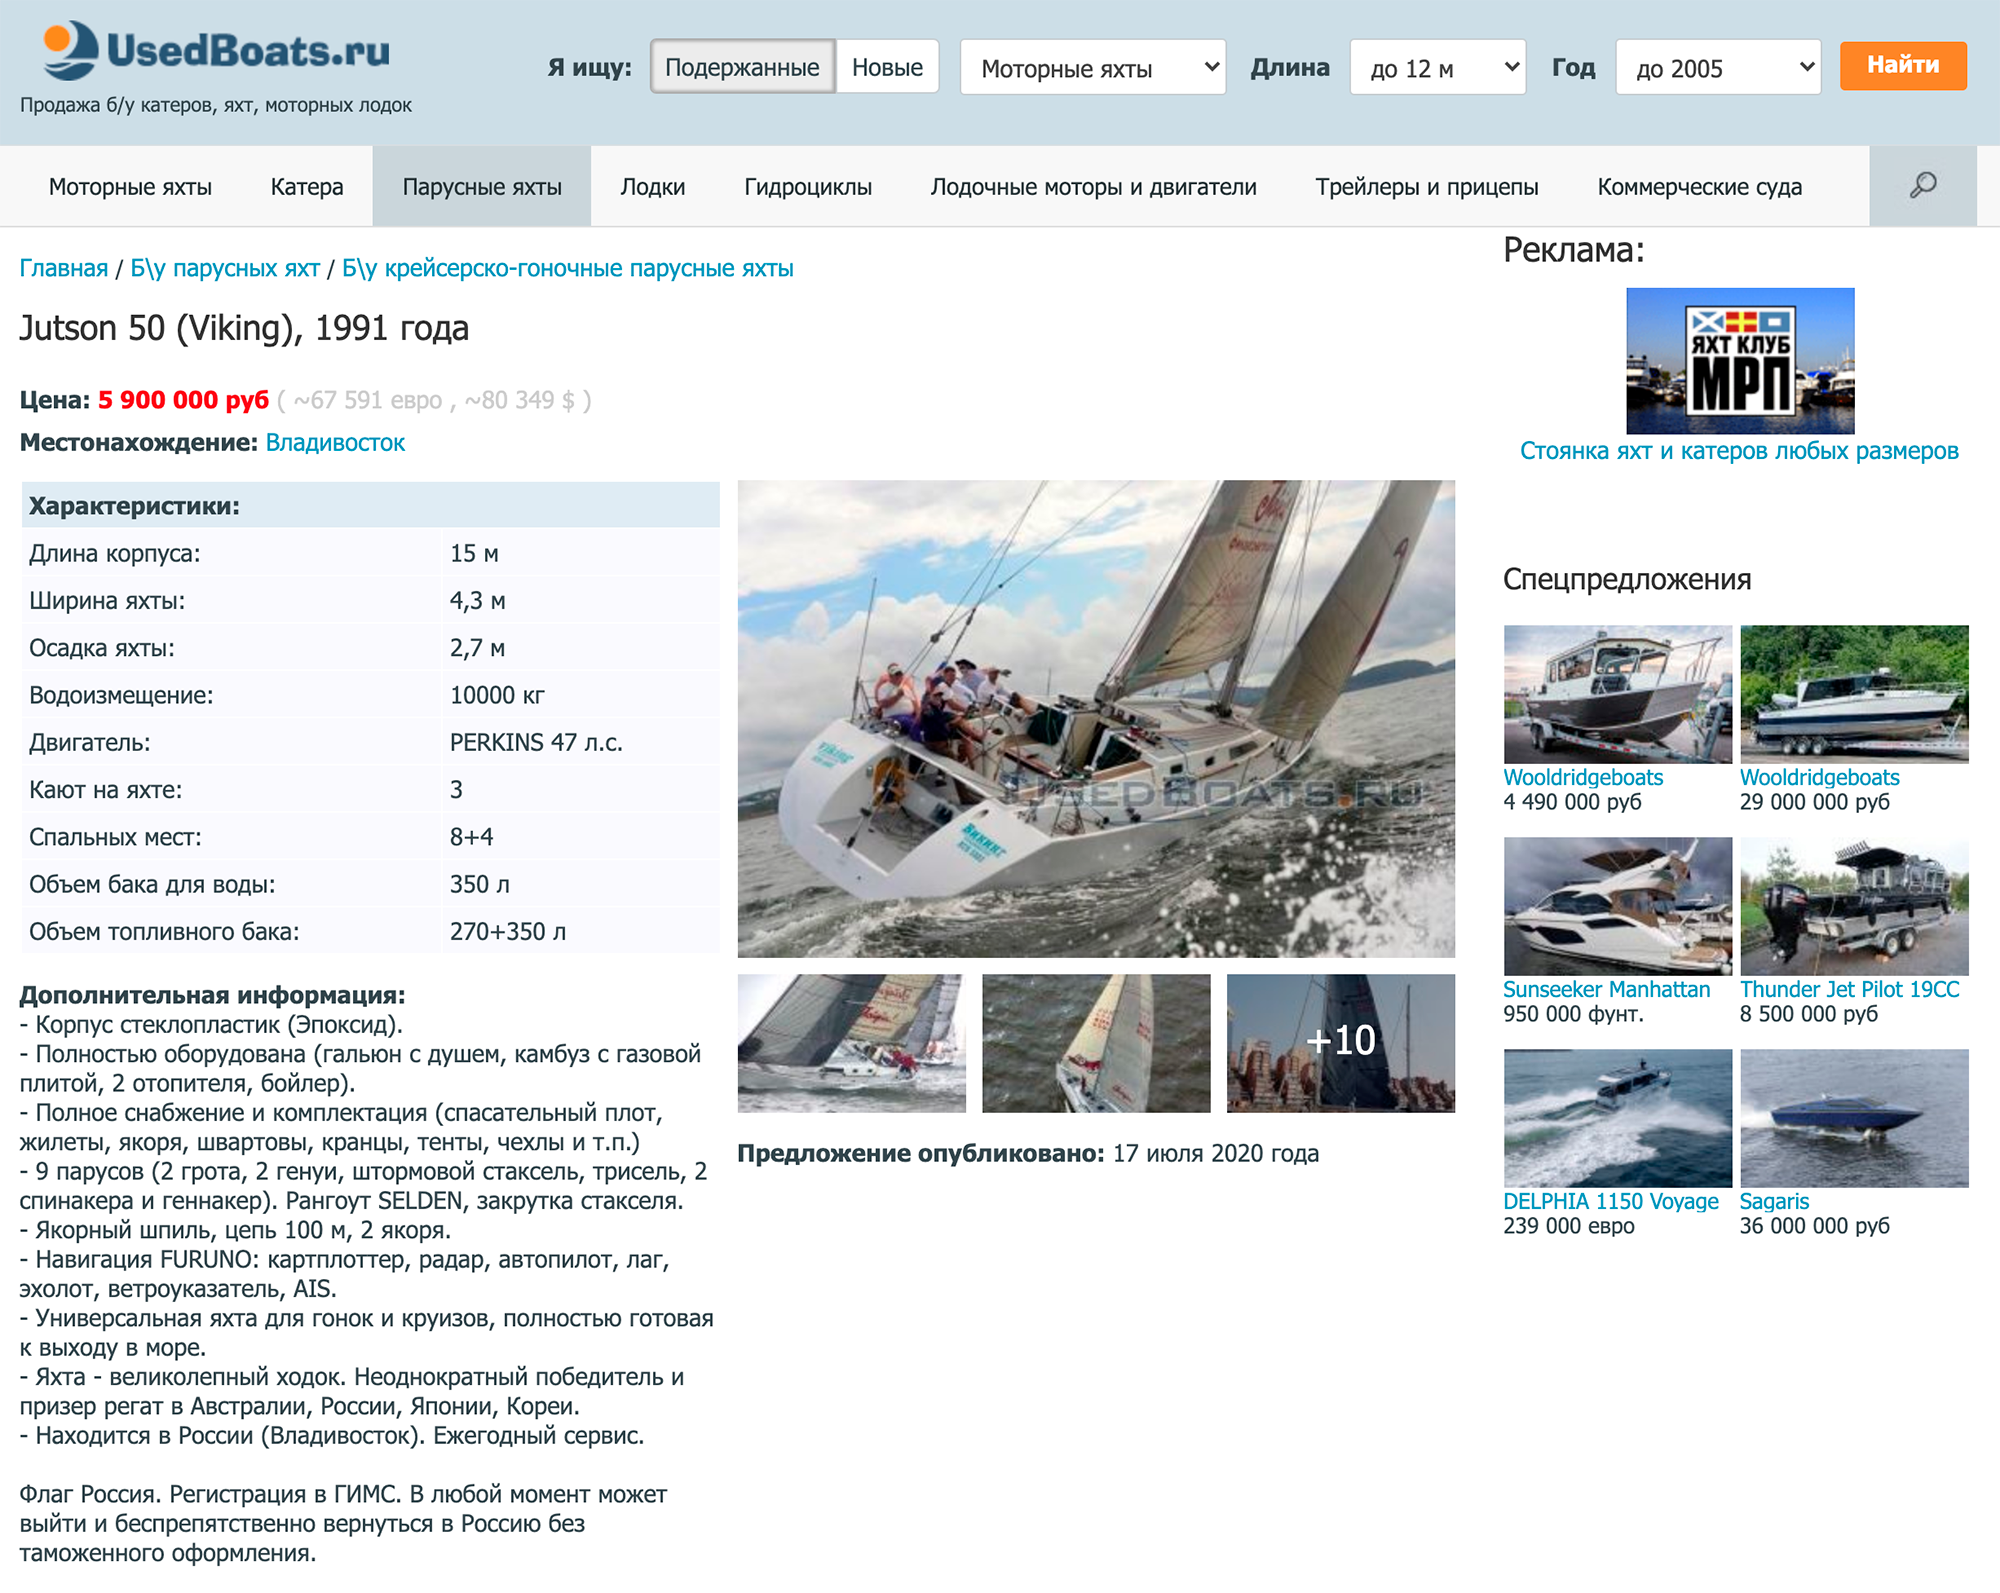 Во Владивостоке предлагают купить круизную парусную яхту 1991 года за 5 900 000 ₽. Длина корпуса — 15 метров. Яхта оборудована туалетом, душем, зоной отдыха, камбузом с газовой плитой, отопителями и бойлером. Источник: usedboats.ru